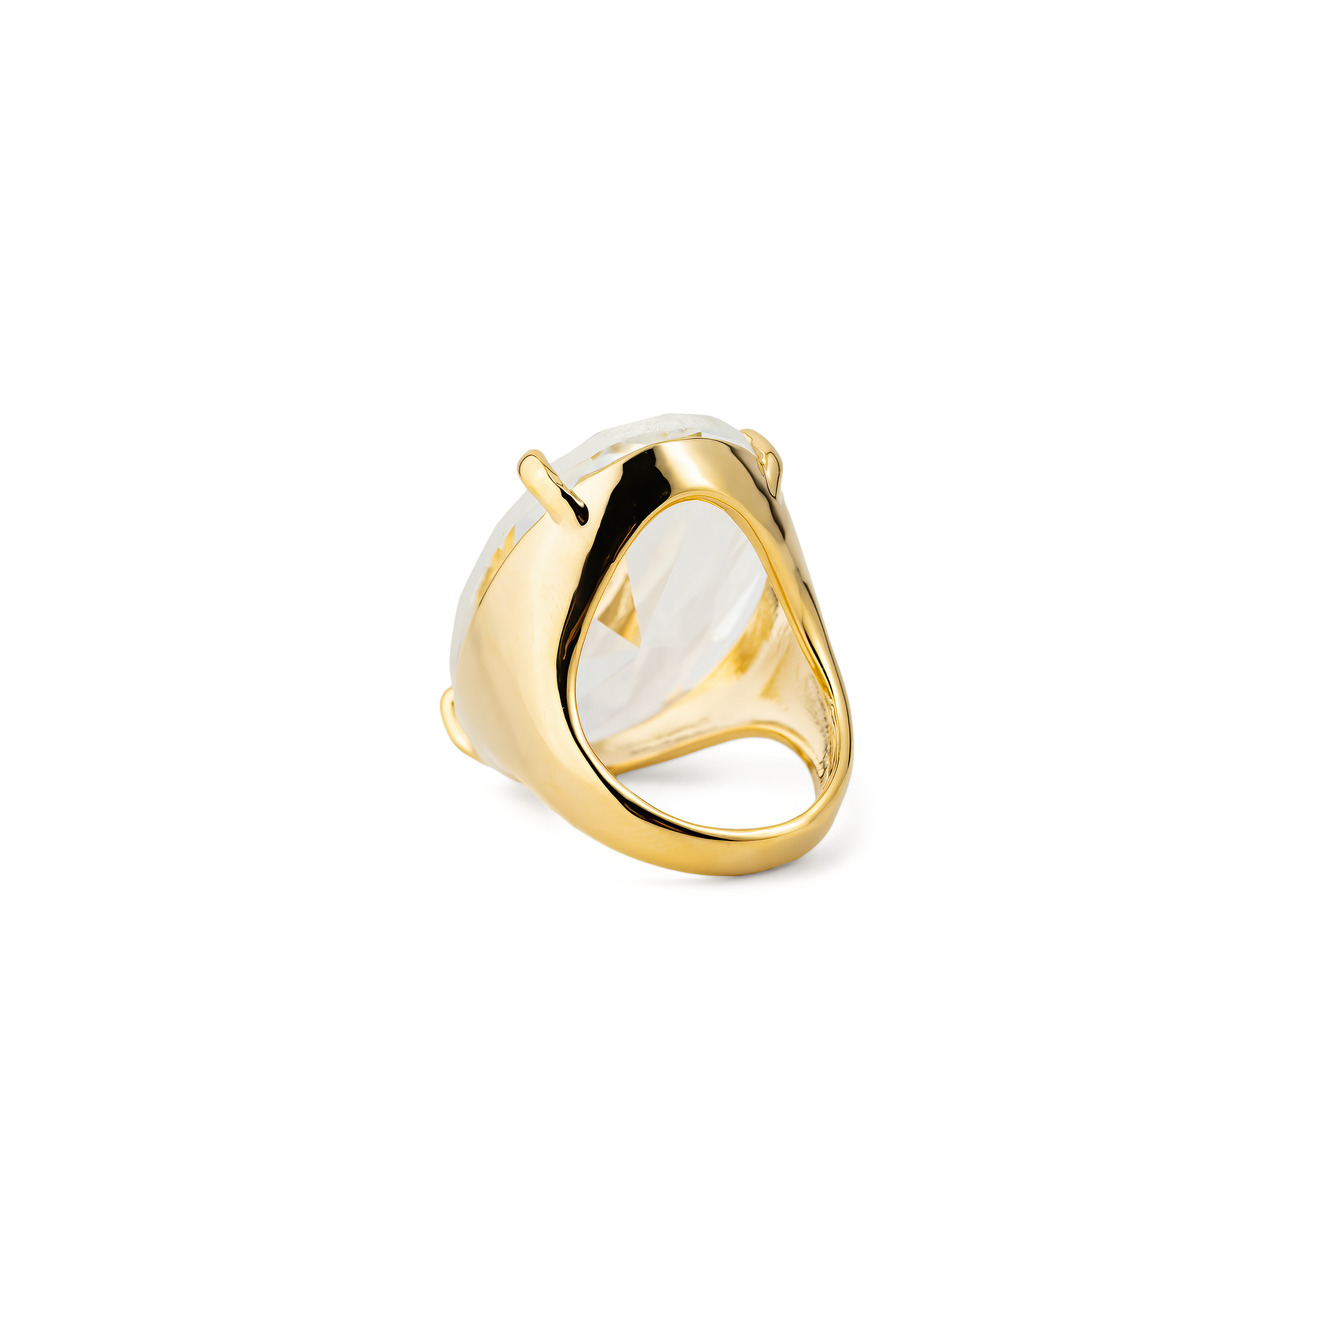 Herald Percy Золотистое кольцо с овальным кристаллом lisa smith золотистое кольцо с античным женским ликом